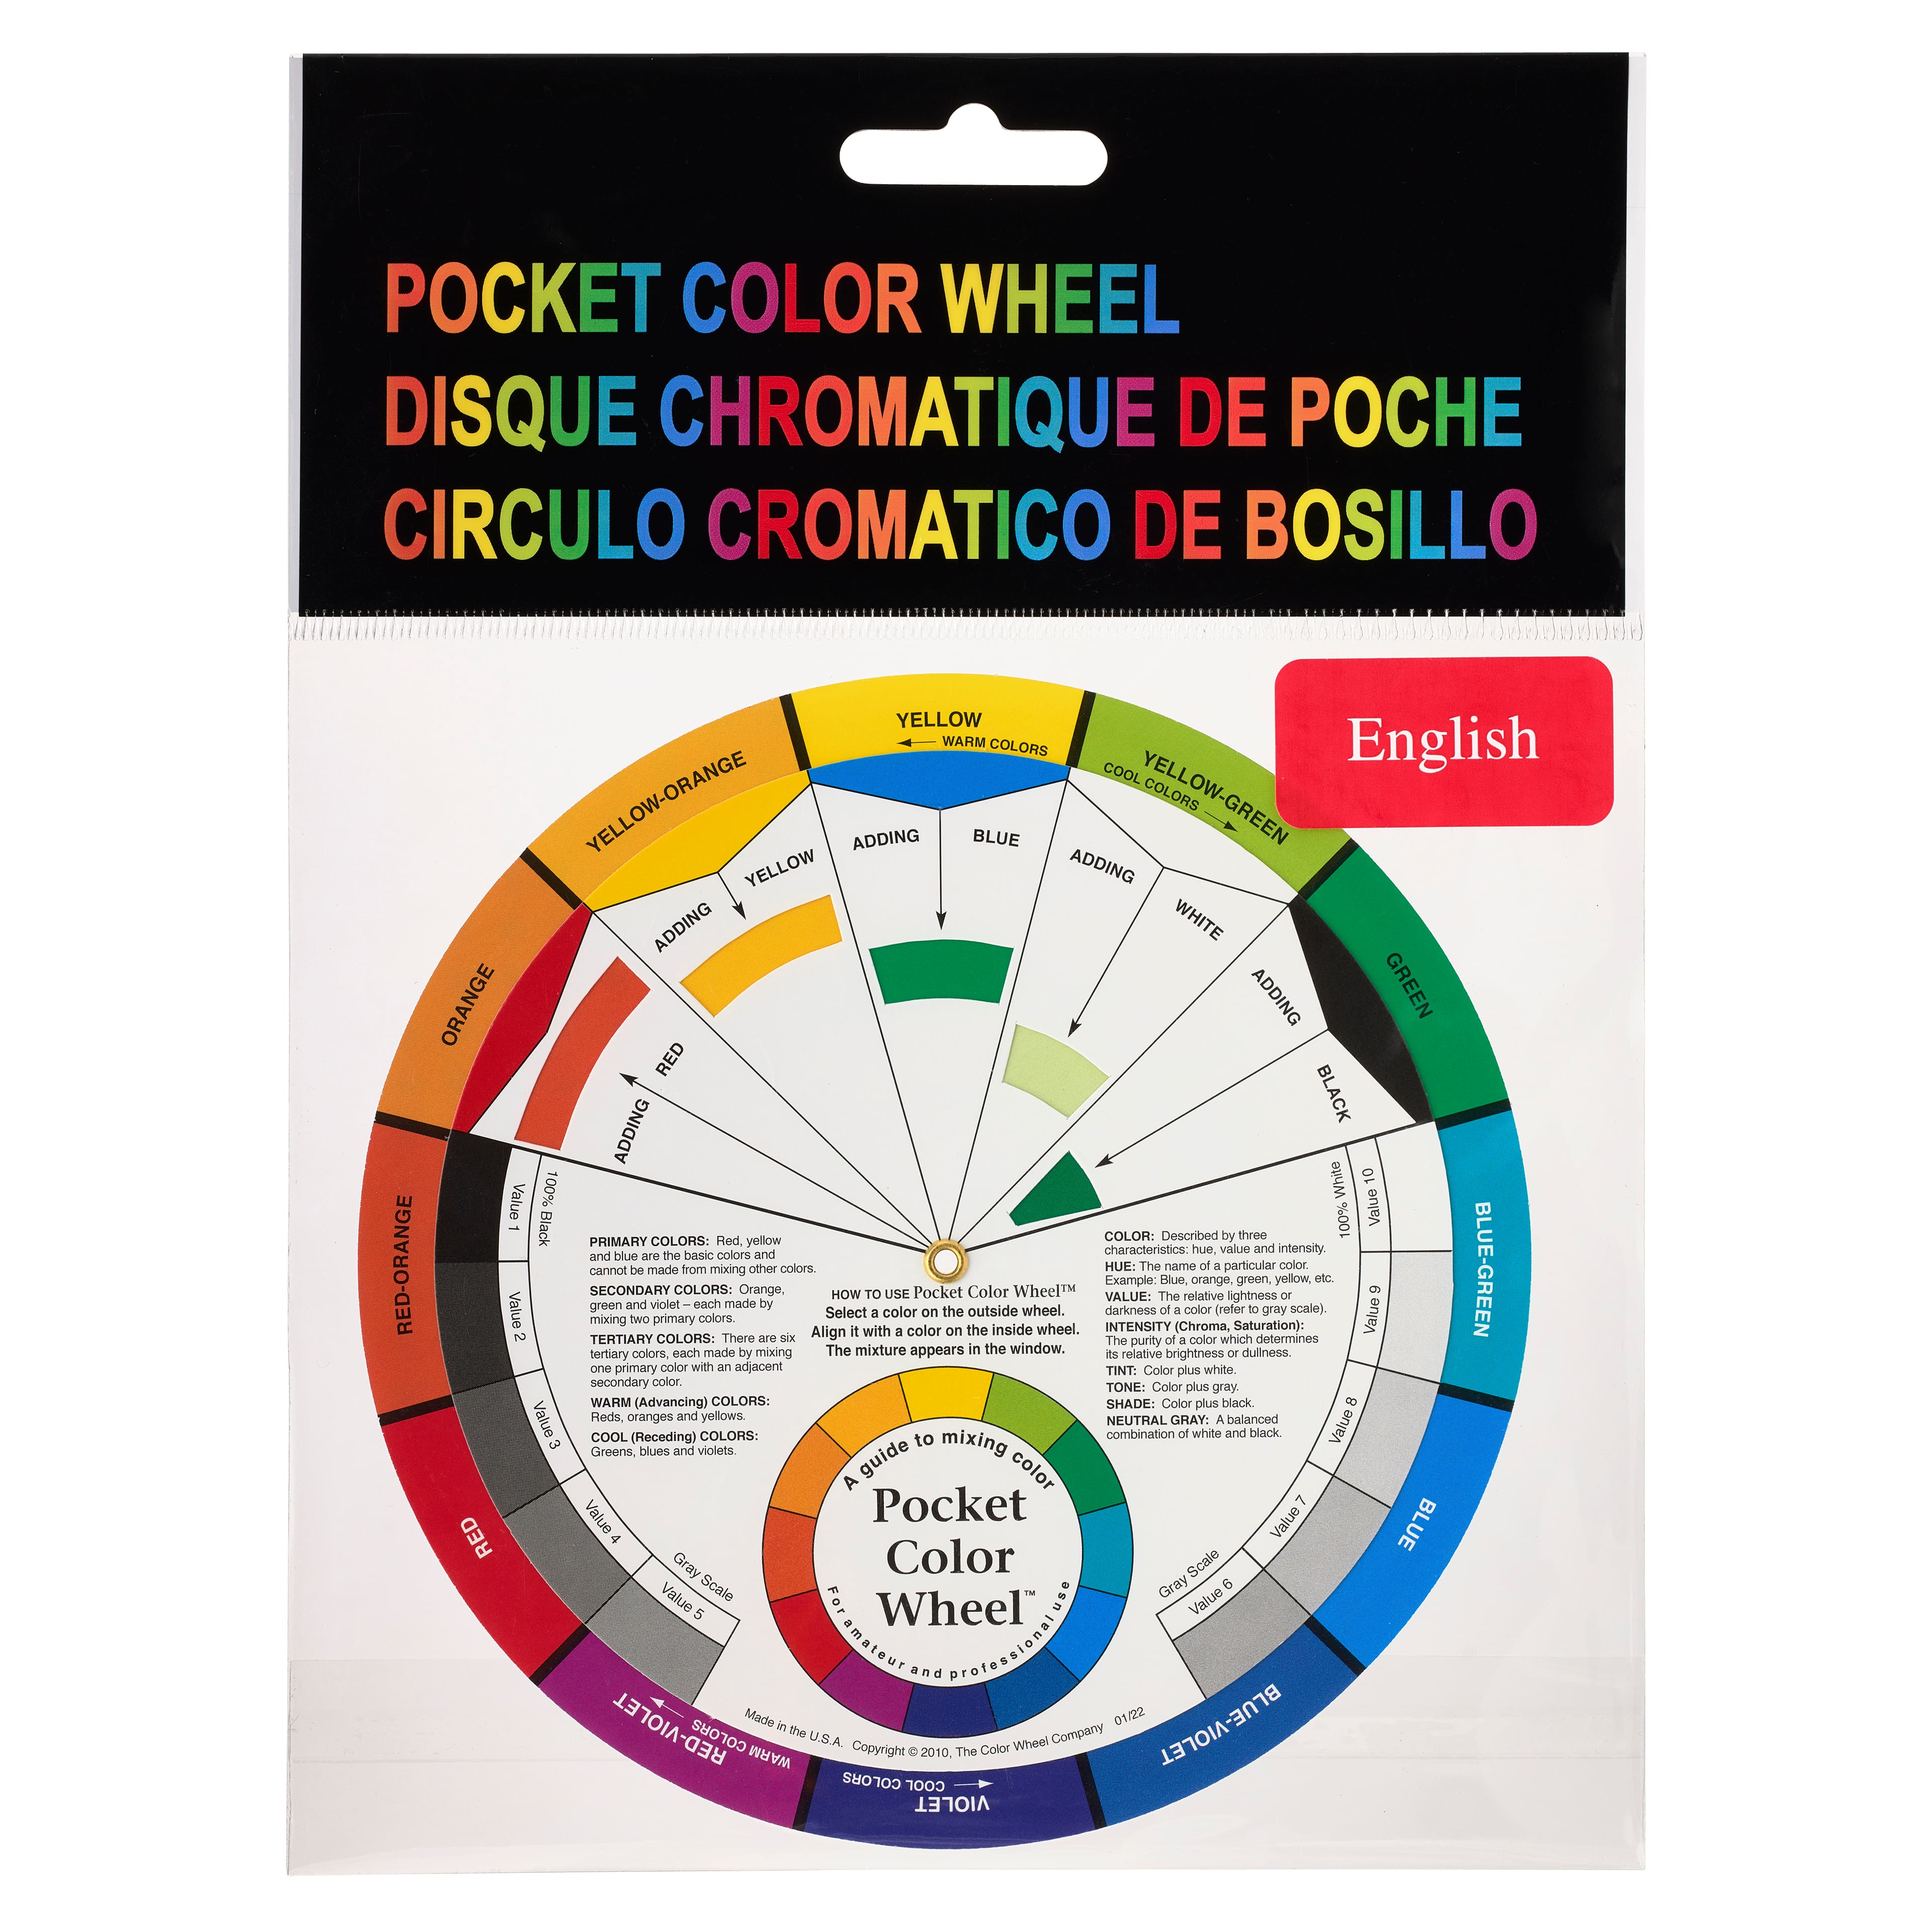 Pocket Color Wheel - 088107235013